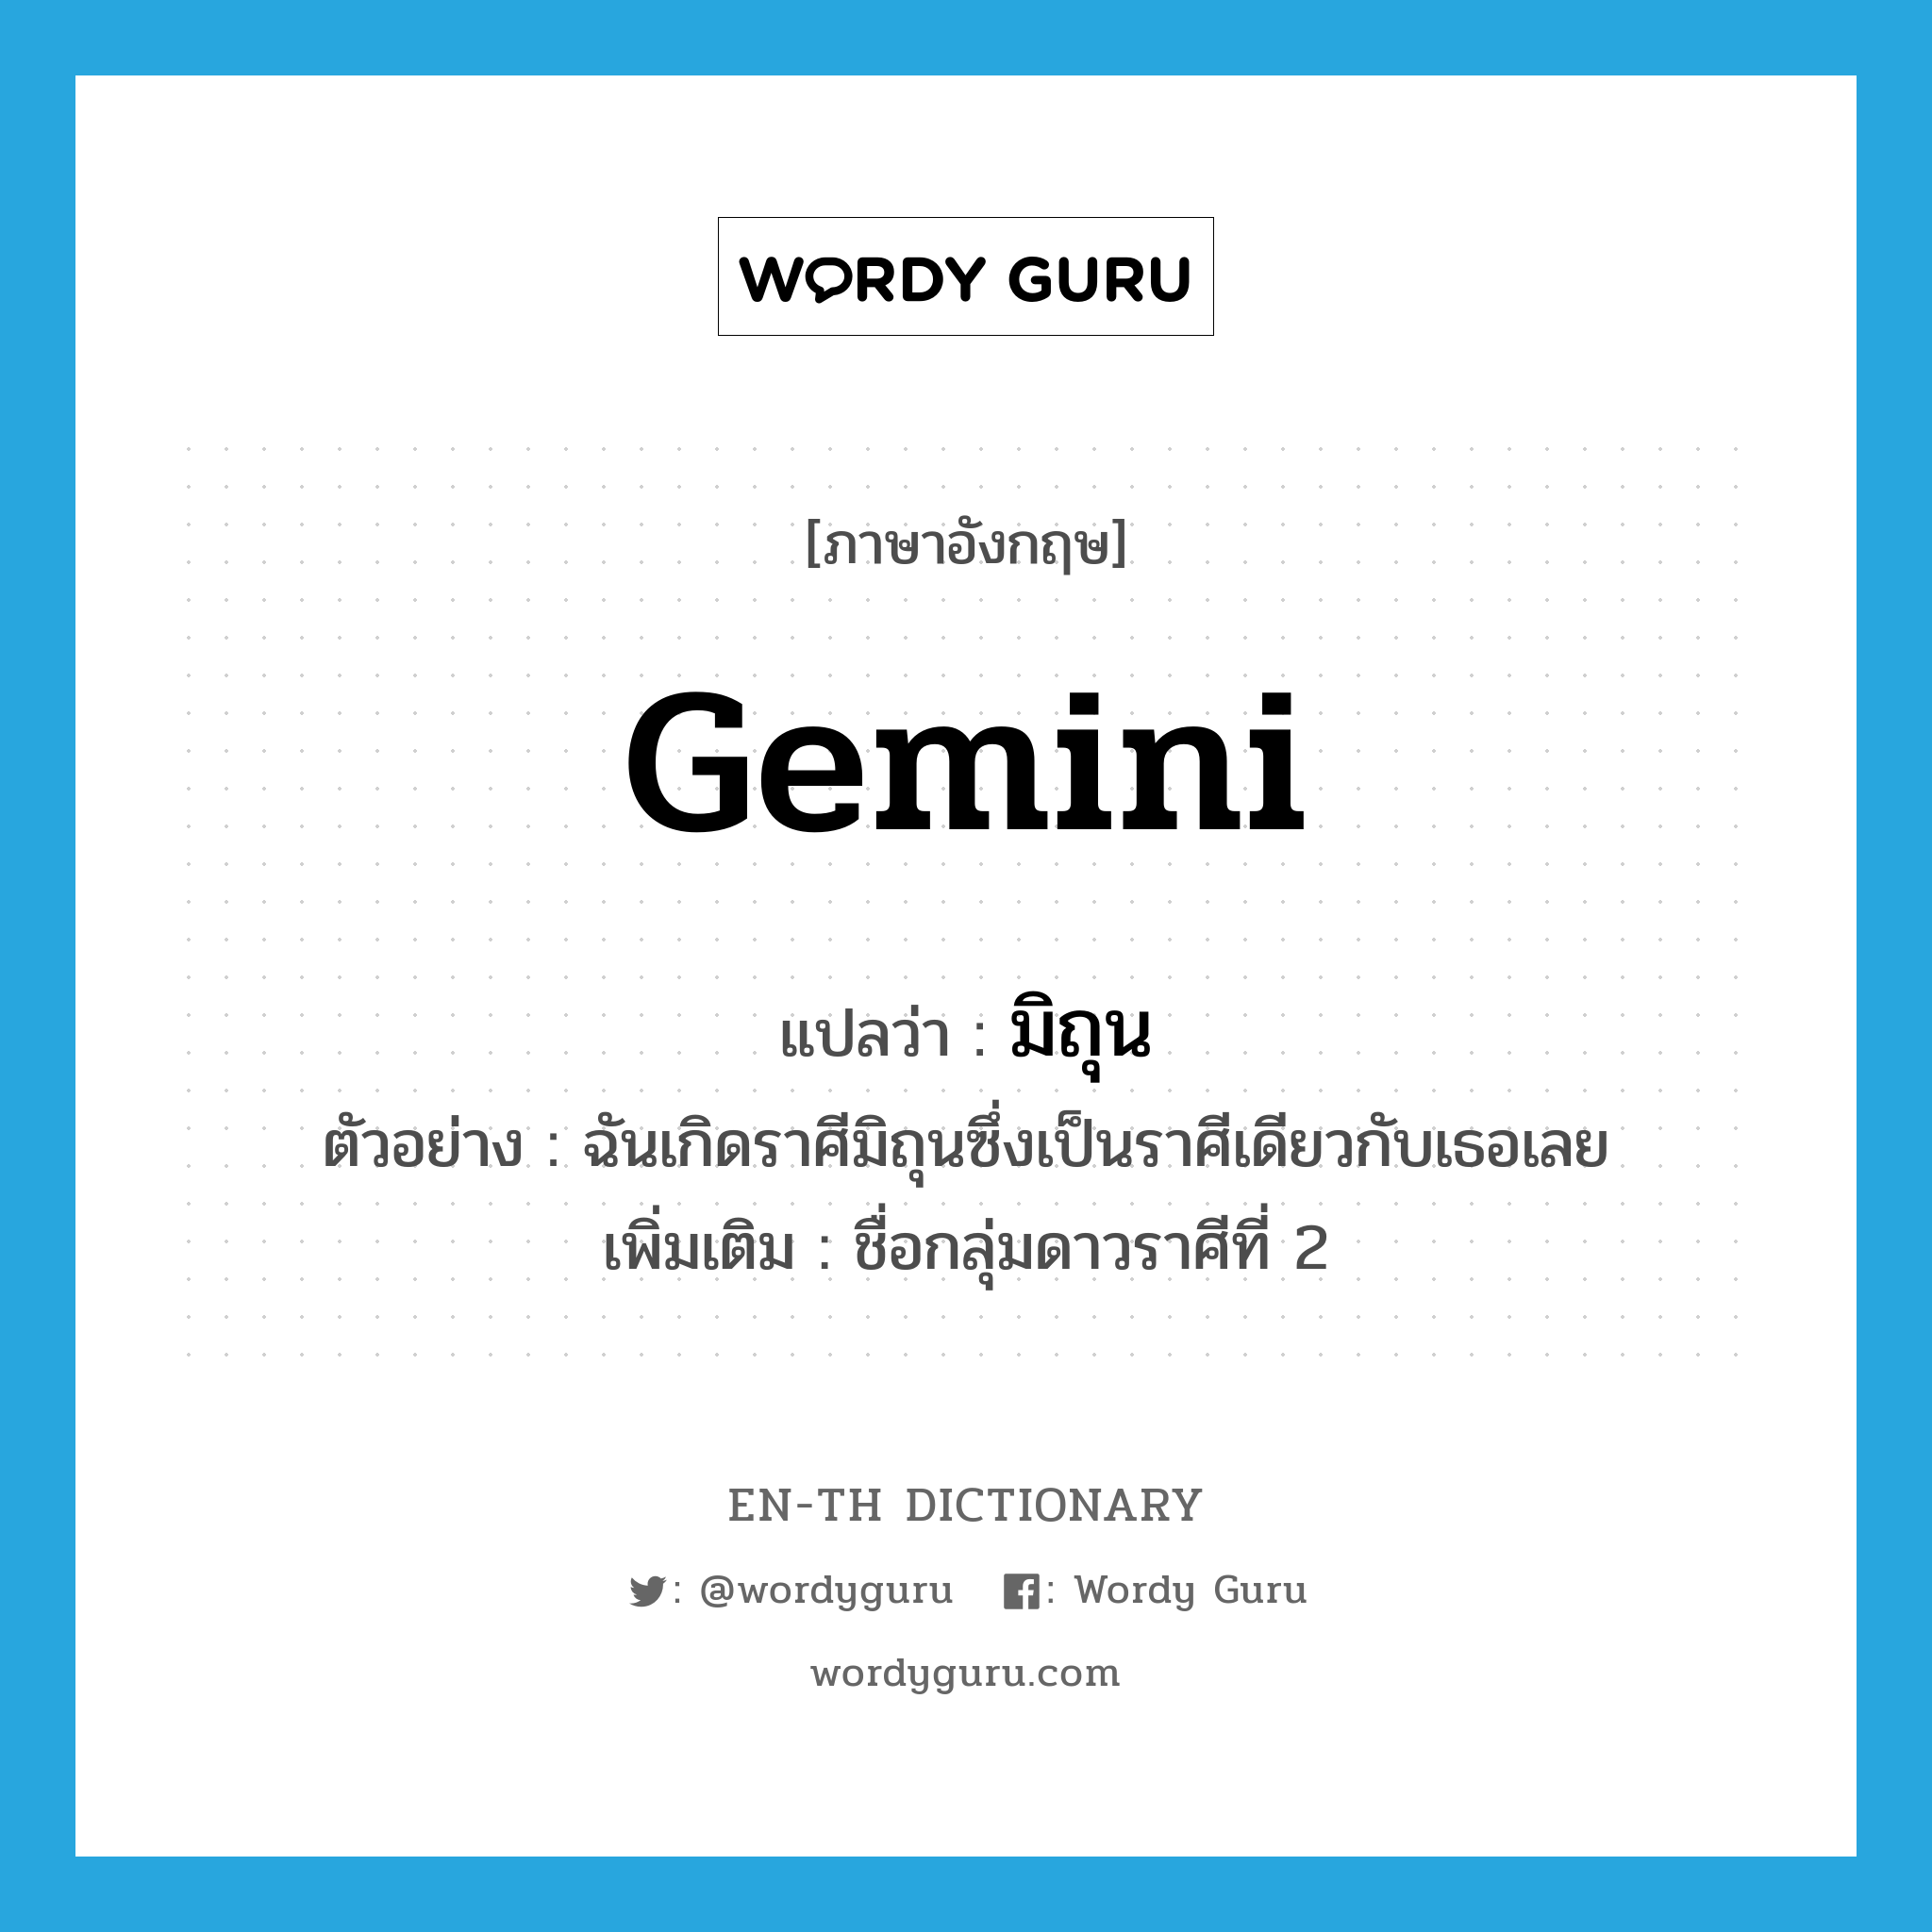 มิถุน ภาษาอังกฤษ?, คำศัพท์ภาษาอังกฤษ มิถุน แปลว่า Gemini ประเภท N ตัวอย่าง ฉันเกิดราศีมิถุนซึ่งเป็นราศีเดียวกับเธอเลย เพิ่มเติม ชื่อกลุ่มดาวราศีที่ 2 หมวด N